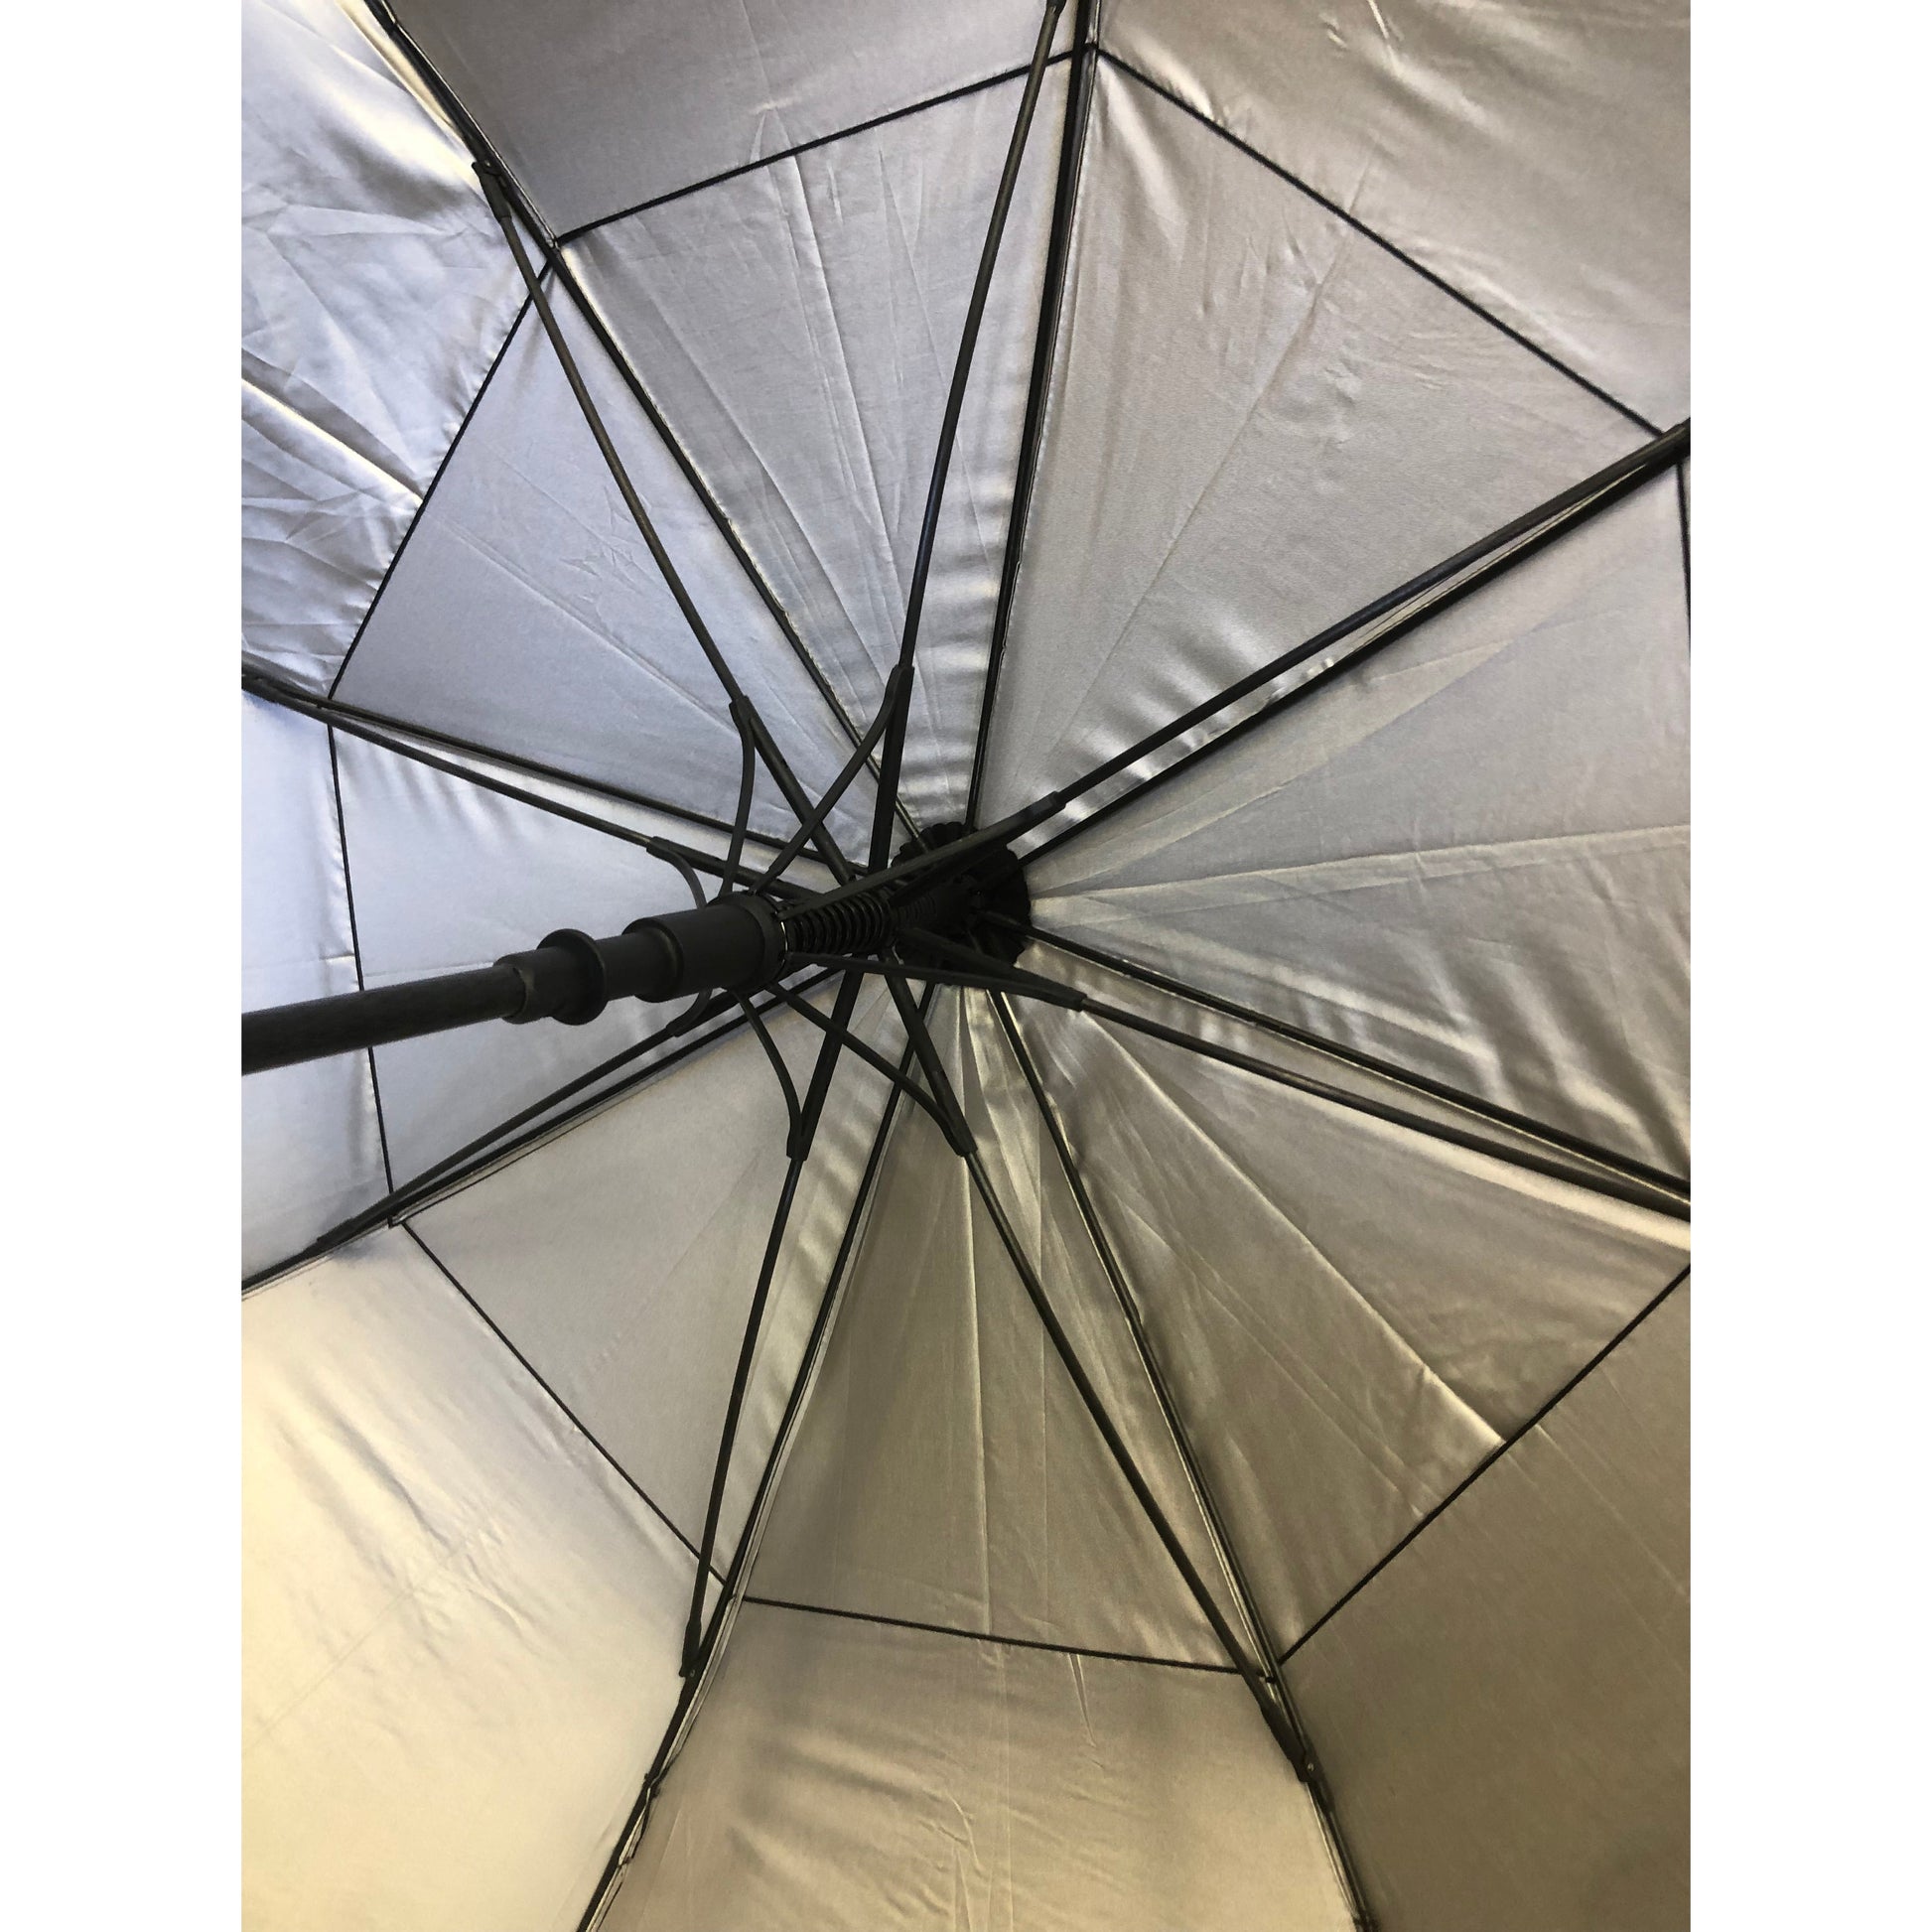 Tracer Umbrella UV